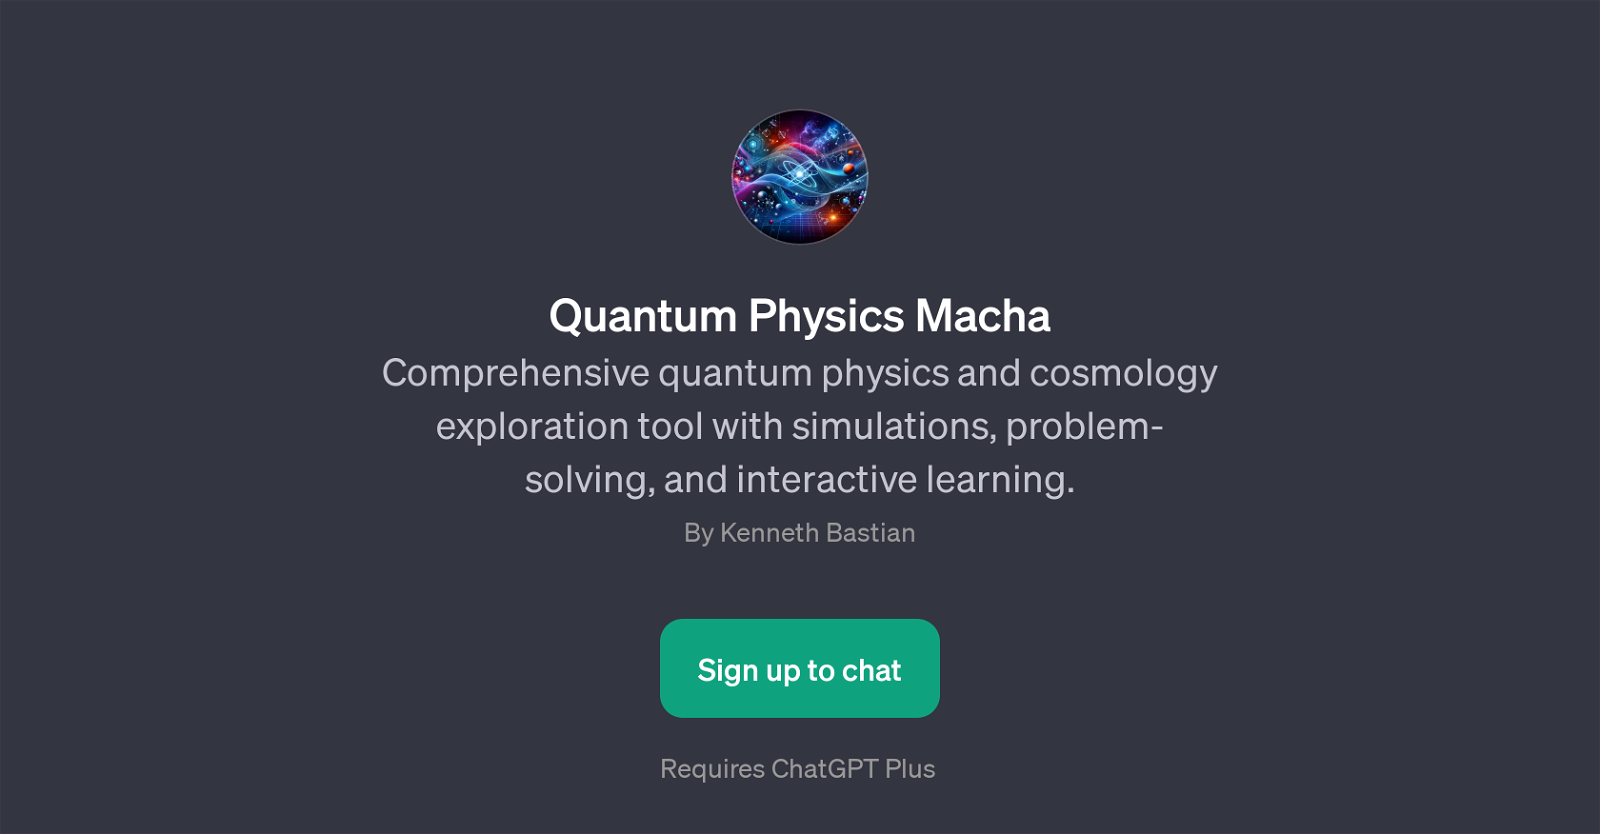 Quantum Physics Macha website